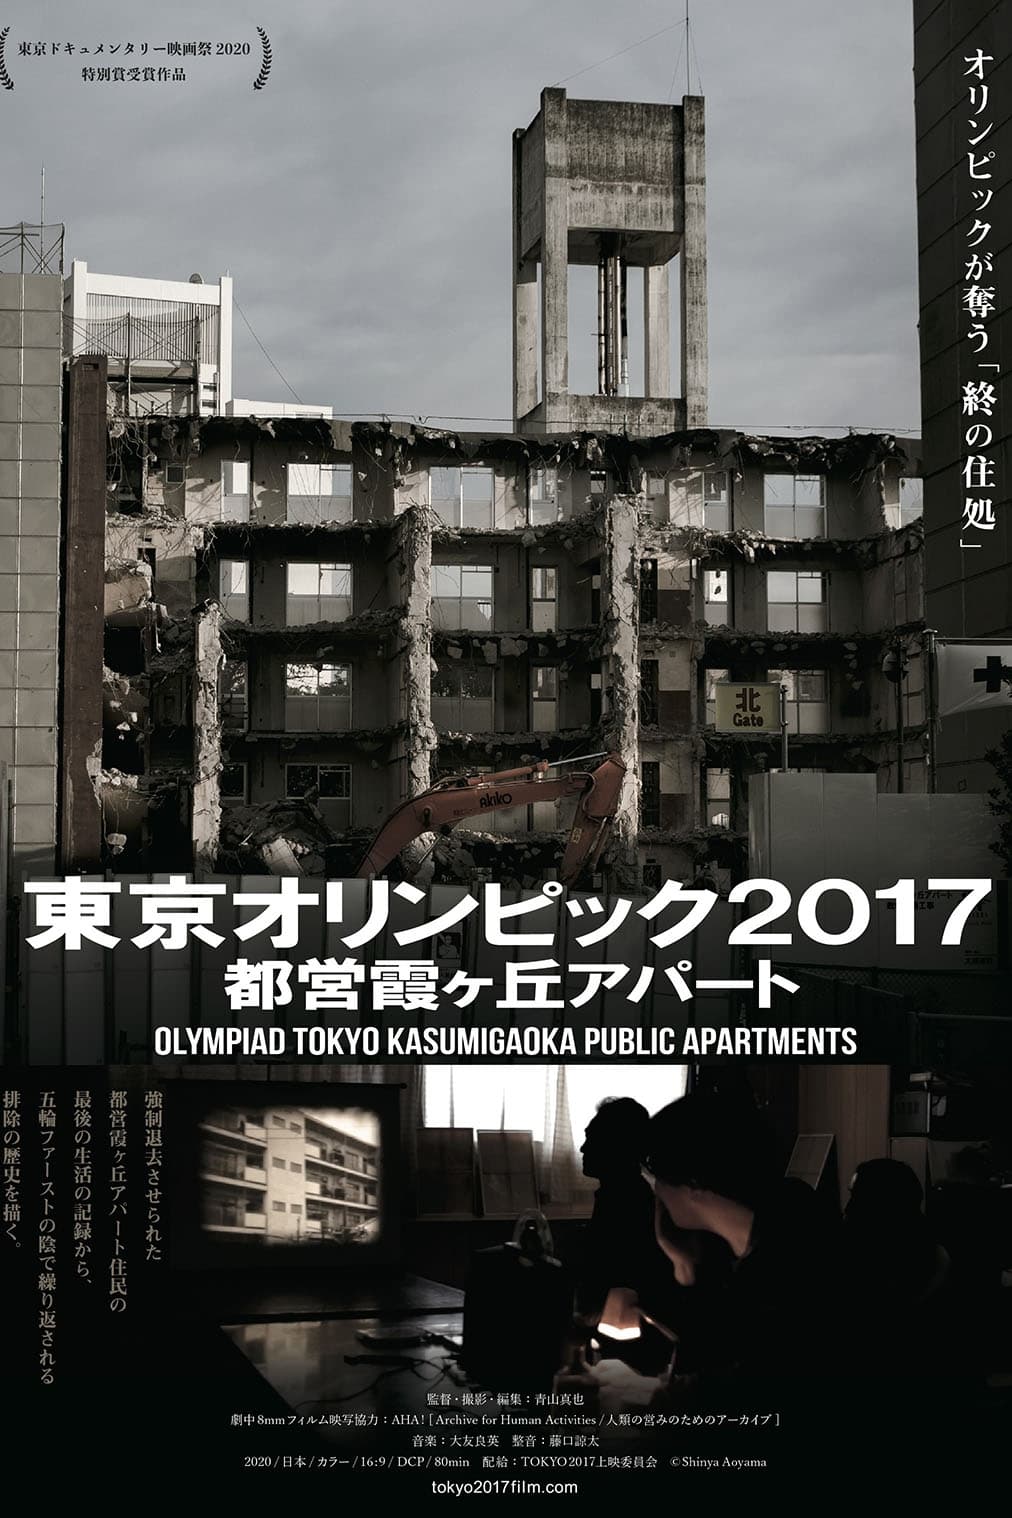 Olympiad Tokyo Kasumigaoka Public Apartments